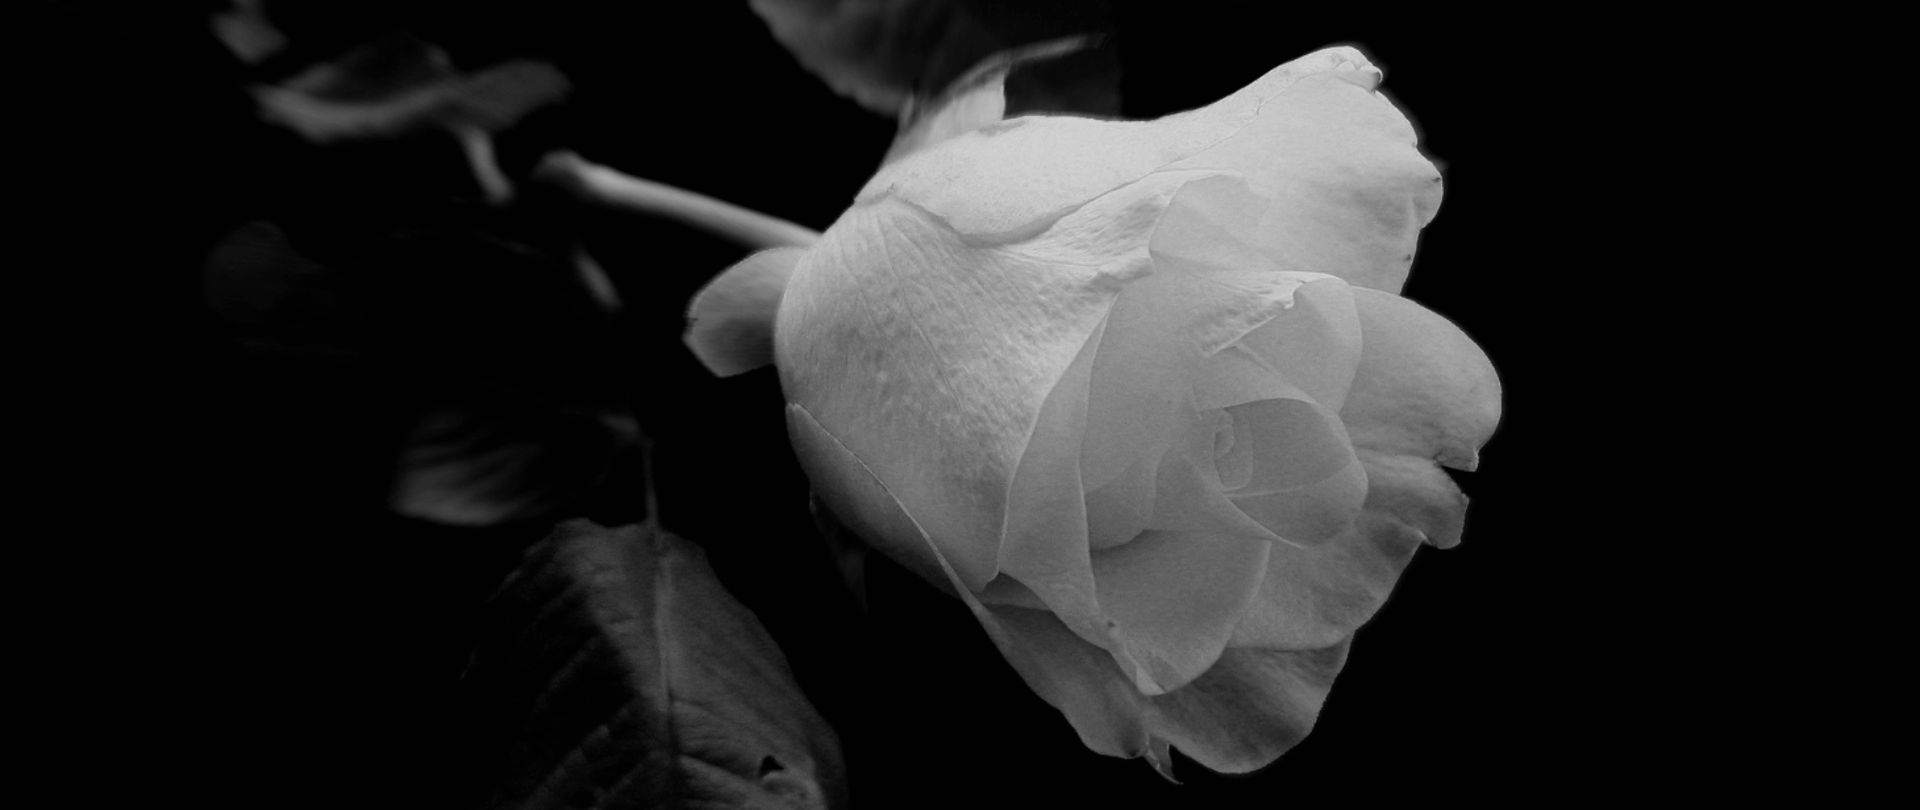 Biała róża na czarnym tle